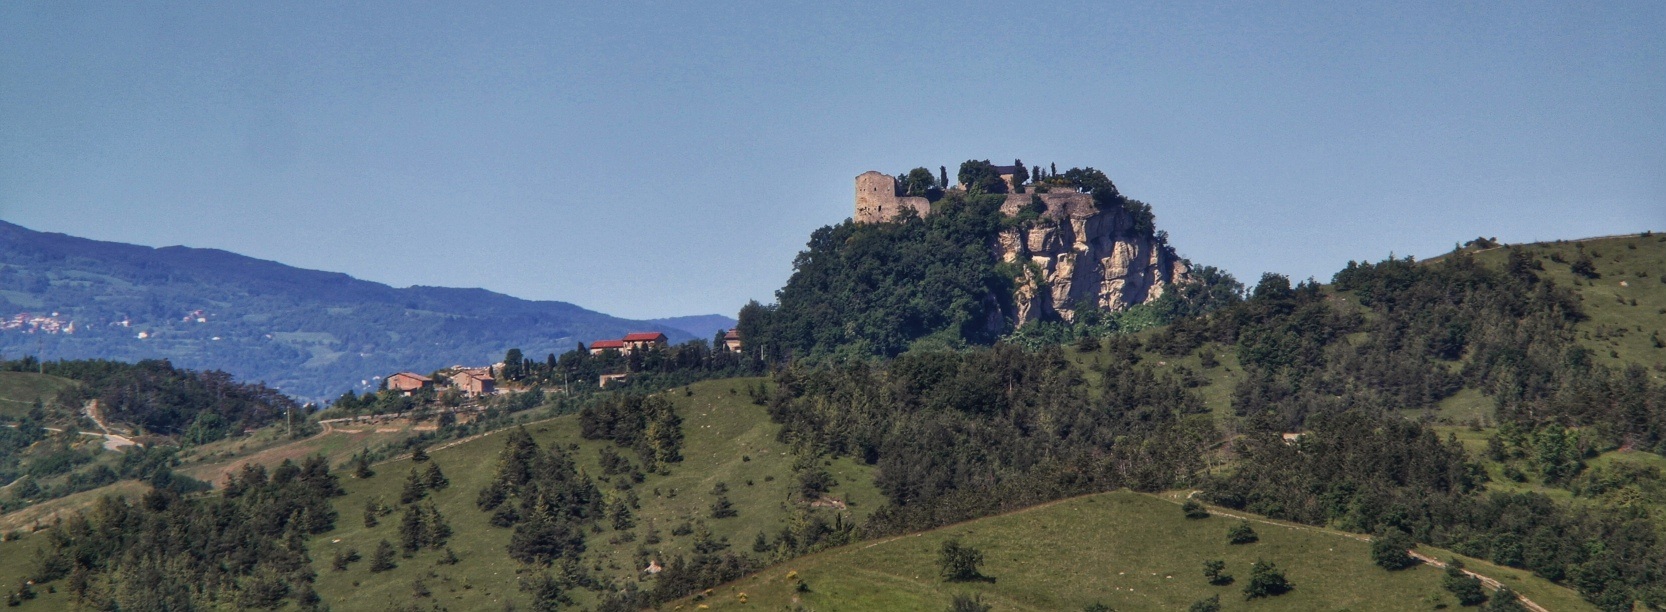 Etappe Nr. 4: von Reggio Emilia zum Castello di Canossa (26,7 km)